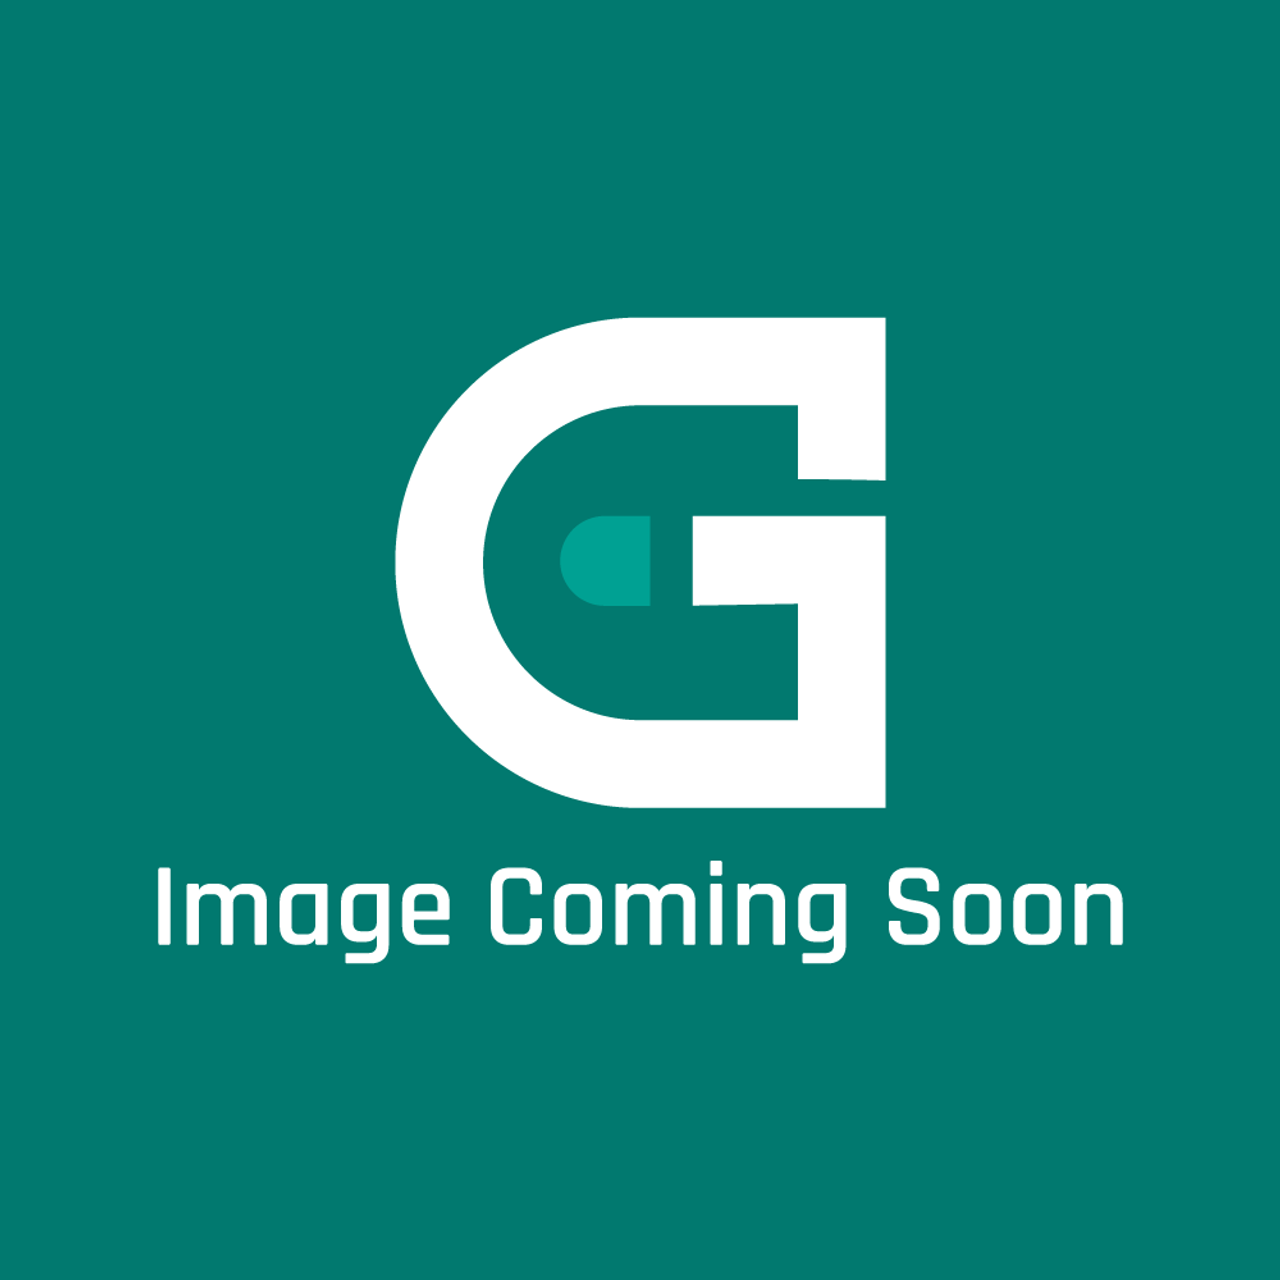 Roundup - AJ Antunes AJA7002315 - Rack, Dbl (Kit W/ 12 Rings) - Image Coming Soon!